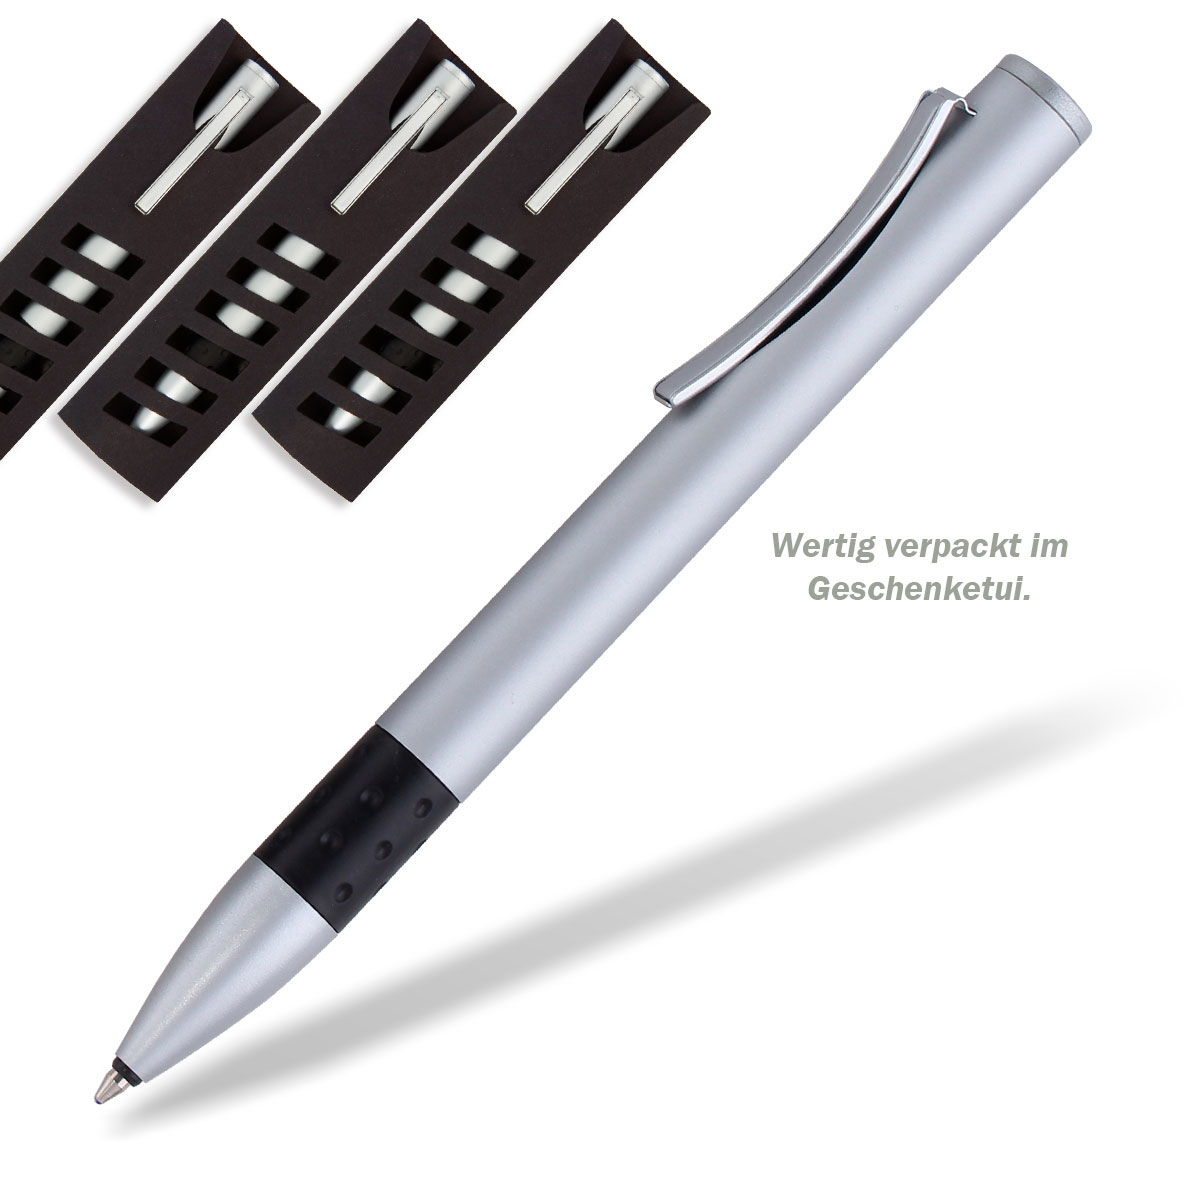 Metall Kugelschreiber mit individueller Laser Gravur Werbung 200 Stück 